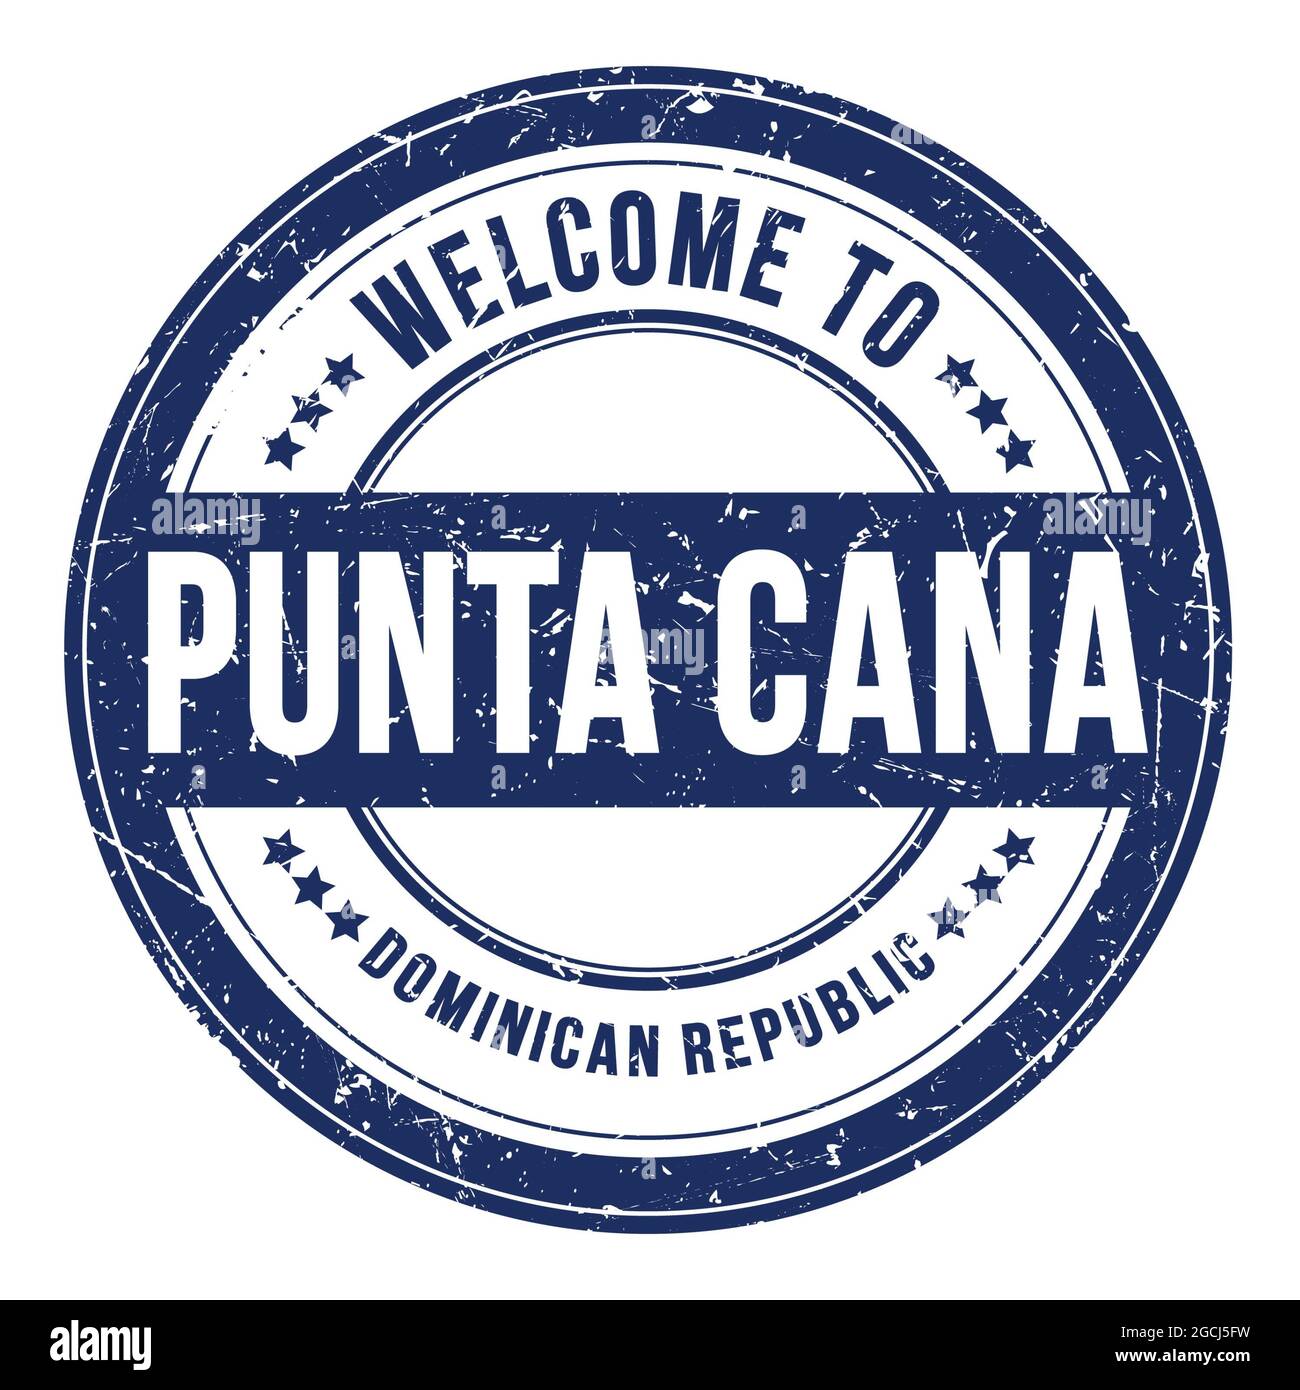 BIENVENUE À PUNTA CANA - RÉPUBLIQUE DOMINICAINE, mots écrits sur le timbre bleu rond de pièce Banque D'Images